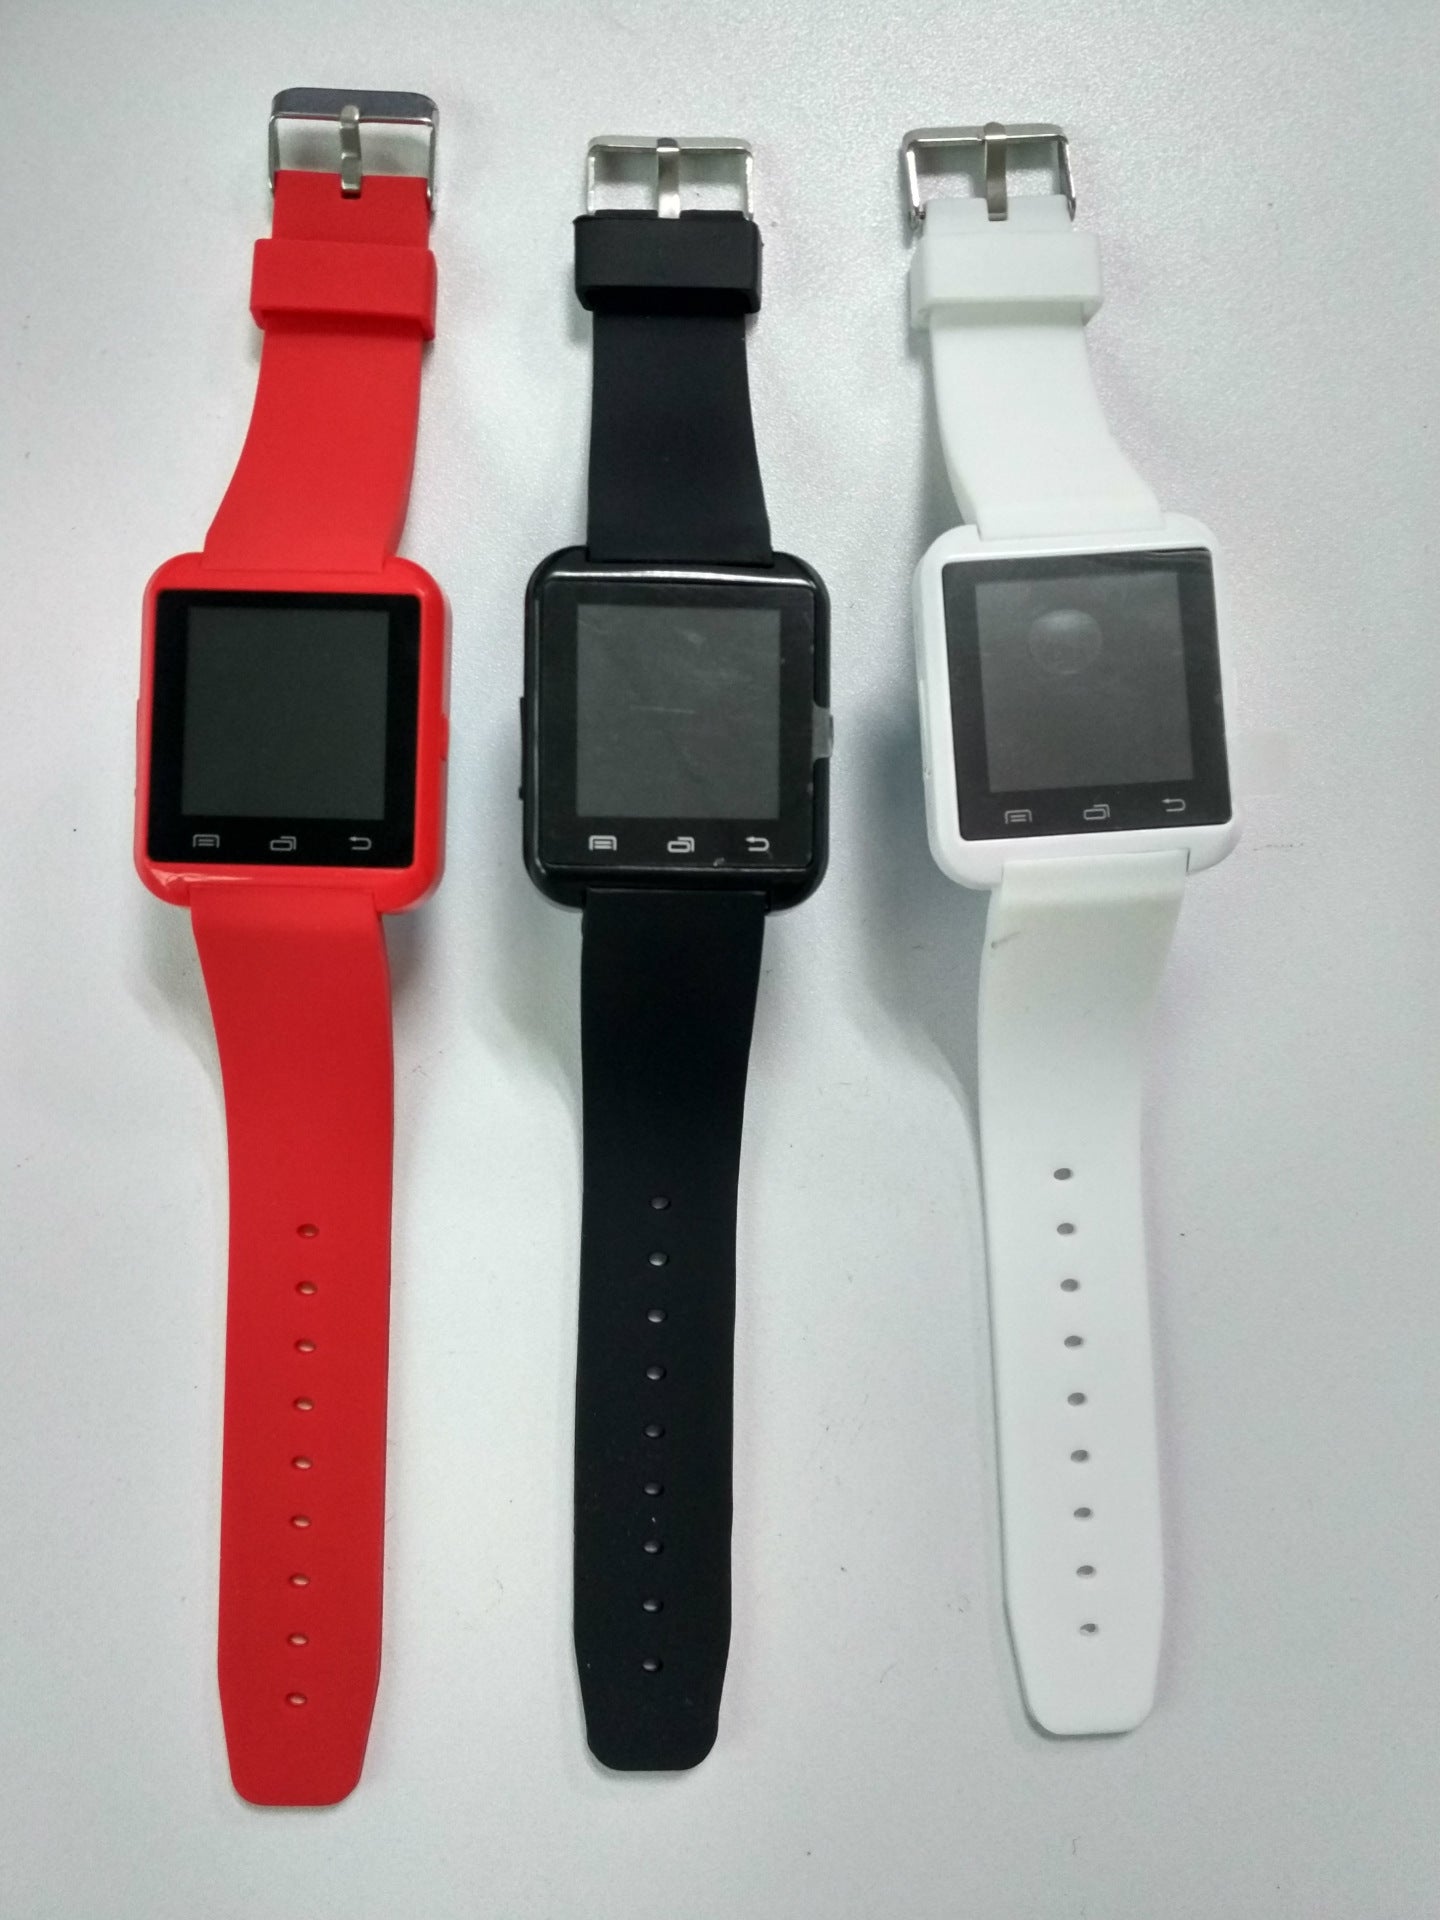 Neue U8 Smartwatches, Bluetooth Smart Wear Sportuhren